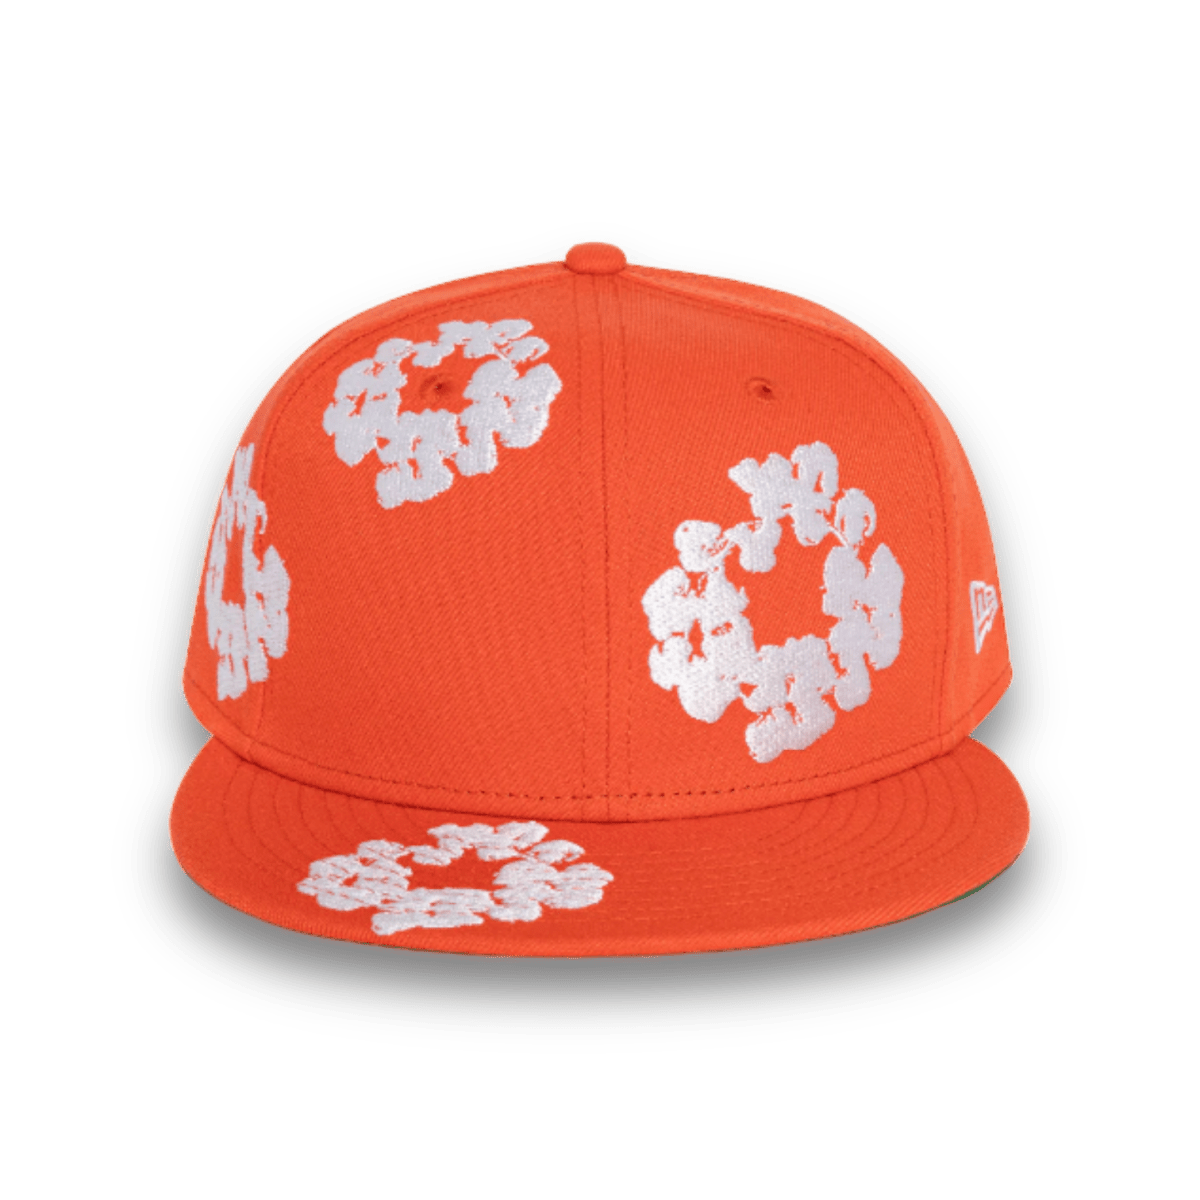 Denim Tears New Era Cotton Wreath Hat 59/50 - Orange - Headwear - Jawns on Fire Sneakers & Streetwear